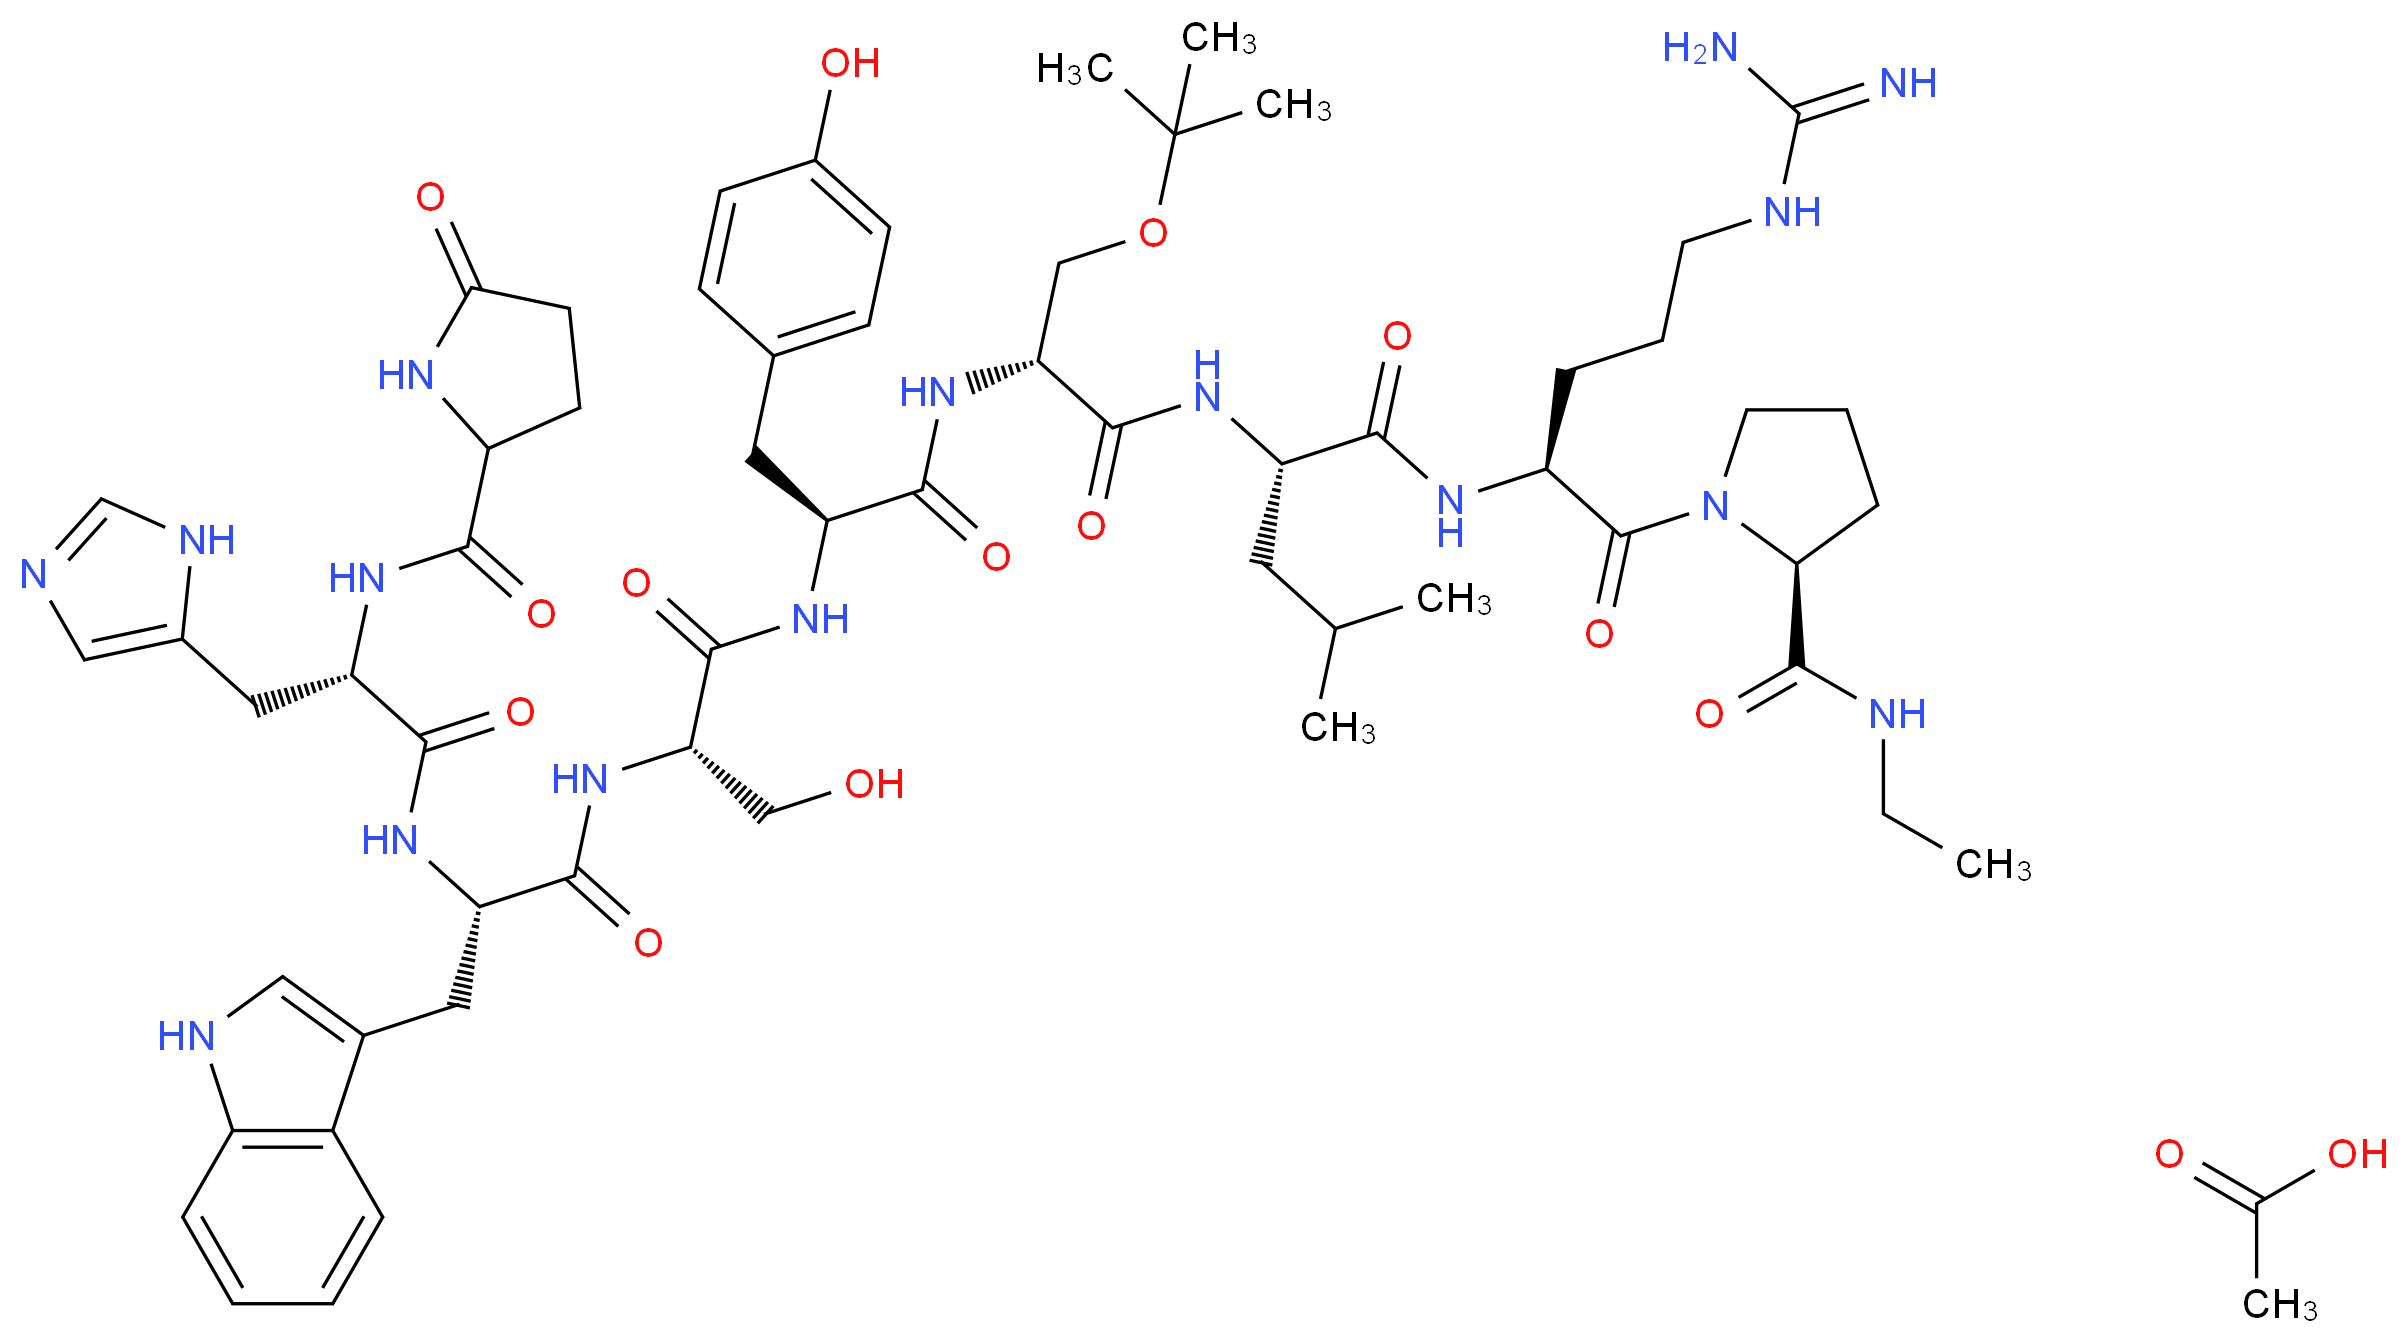 (2S)-1-[(2S)-2-[(2S)-2-[(2R)-3-(tert-butoxy)-2-[(2S)-2-[(2S)-3-hydroxy-2-[(2S)-2-[(2S)-3-(1H-imidazol-5-yl)-2-[(5-oxopyrrolidin-2-yl)formamido]propanamido]-3-(1H-indol-3-yl)propanamido]propanamido]-3-(4-hydroxyphenyl)propanamido]propanamido]-4-methylpentanamido]-5-carbamimidamidopentanoyl]-N-ethylpyrrolidine-2-carboxamide; acetic acid_分子结构_CAS_68630-75-1